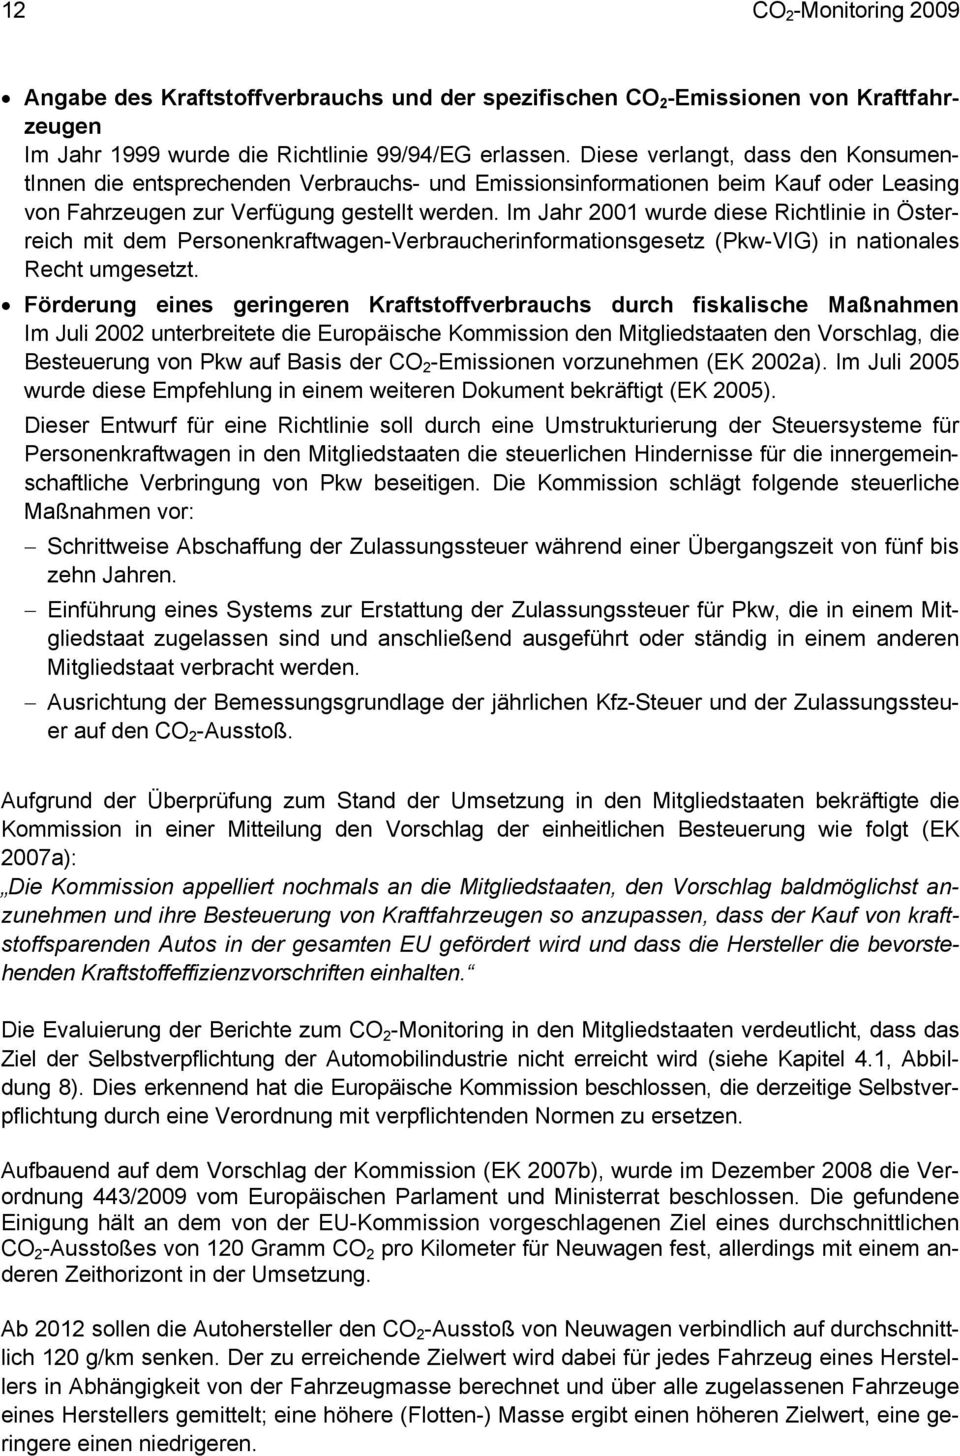 Im Jahr 2001 wurde diese Richtlinie in Österreich mit dem Personenkraftwagen-Verbraucherinformationsgesetz (Pkw-VIG) in nationales Recht umgesetzt.